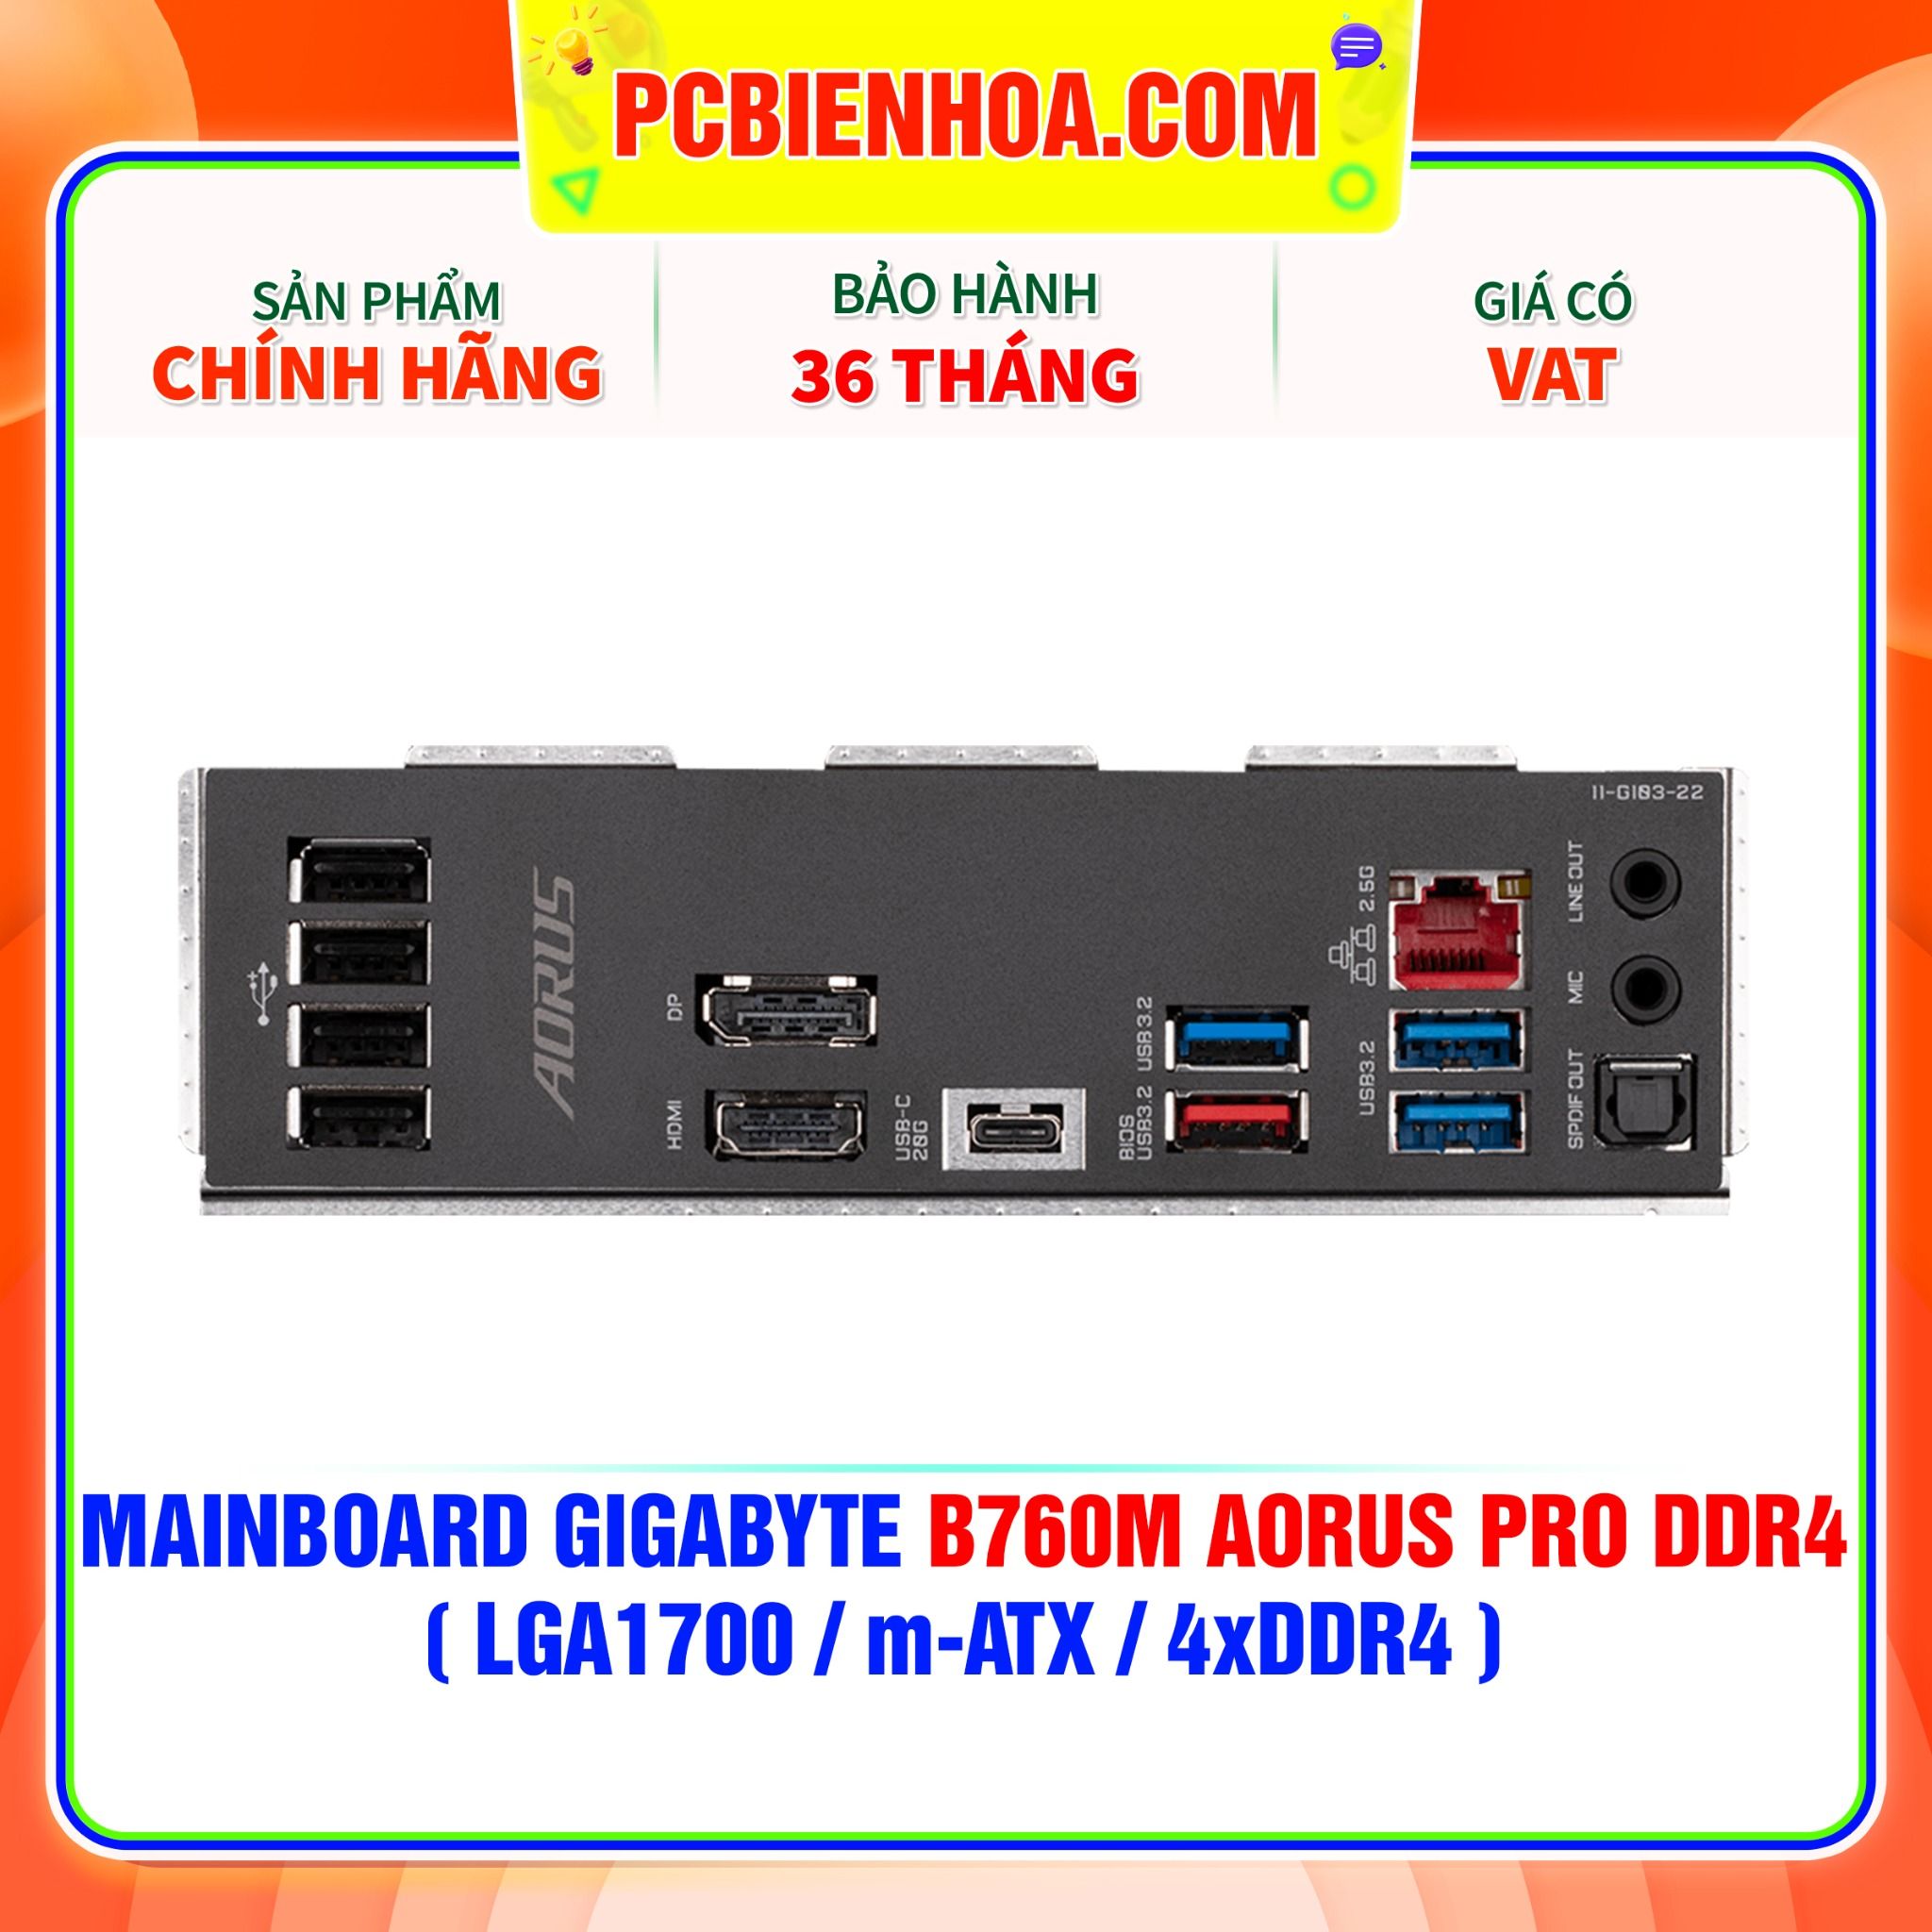  MAINBOARD GIGABYTE B760M AORUS PRO DDR4 ( LGA1700 / M-ATX / 4xDDR4 ) 